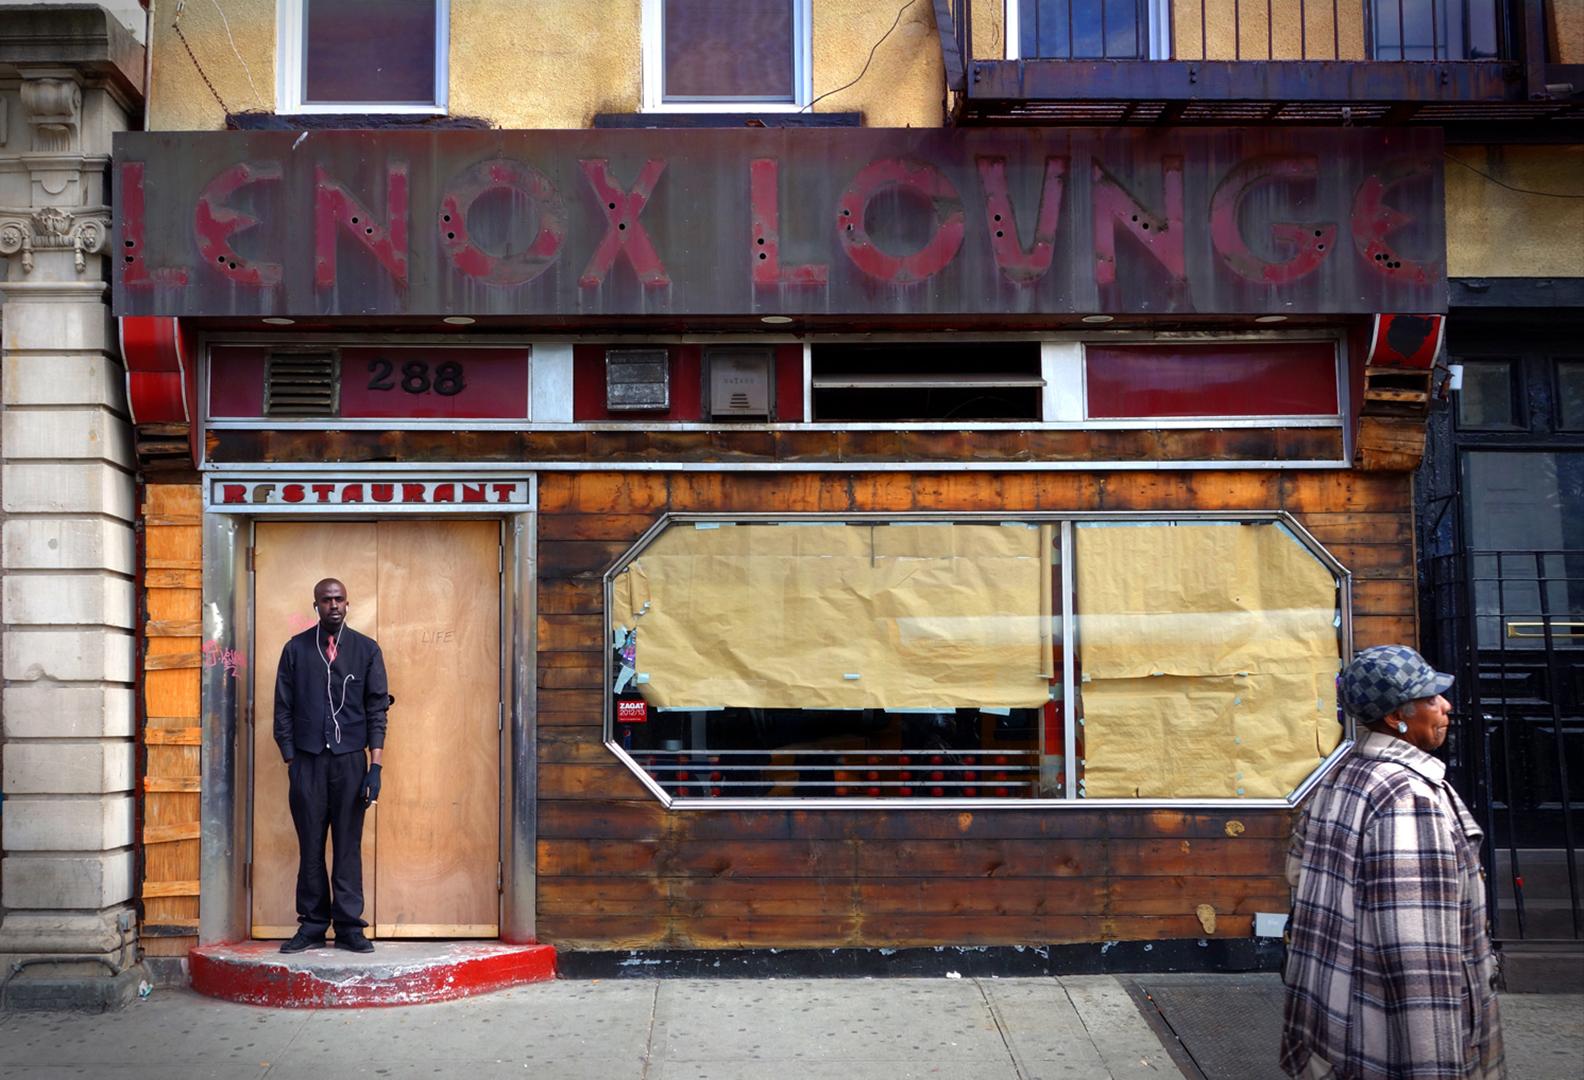 Künstlerin: Sally Davies (1956)
Titel: Lenox Lounge (New York City)
Jahr: 2022
Medium: Tintenstrahldruck auf Archivierungspapier
Auflage: 24, plus Probedrucke
Größe: 24 x 36 Zoll
Zustand: Ausgezeichnet
Beschriftung: Signiert, datiert, betitelt vom